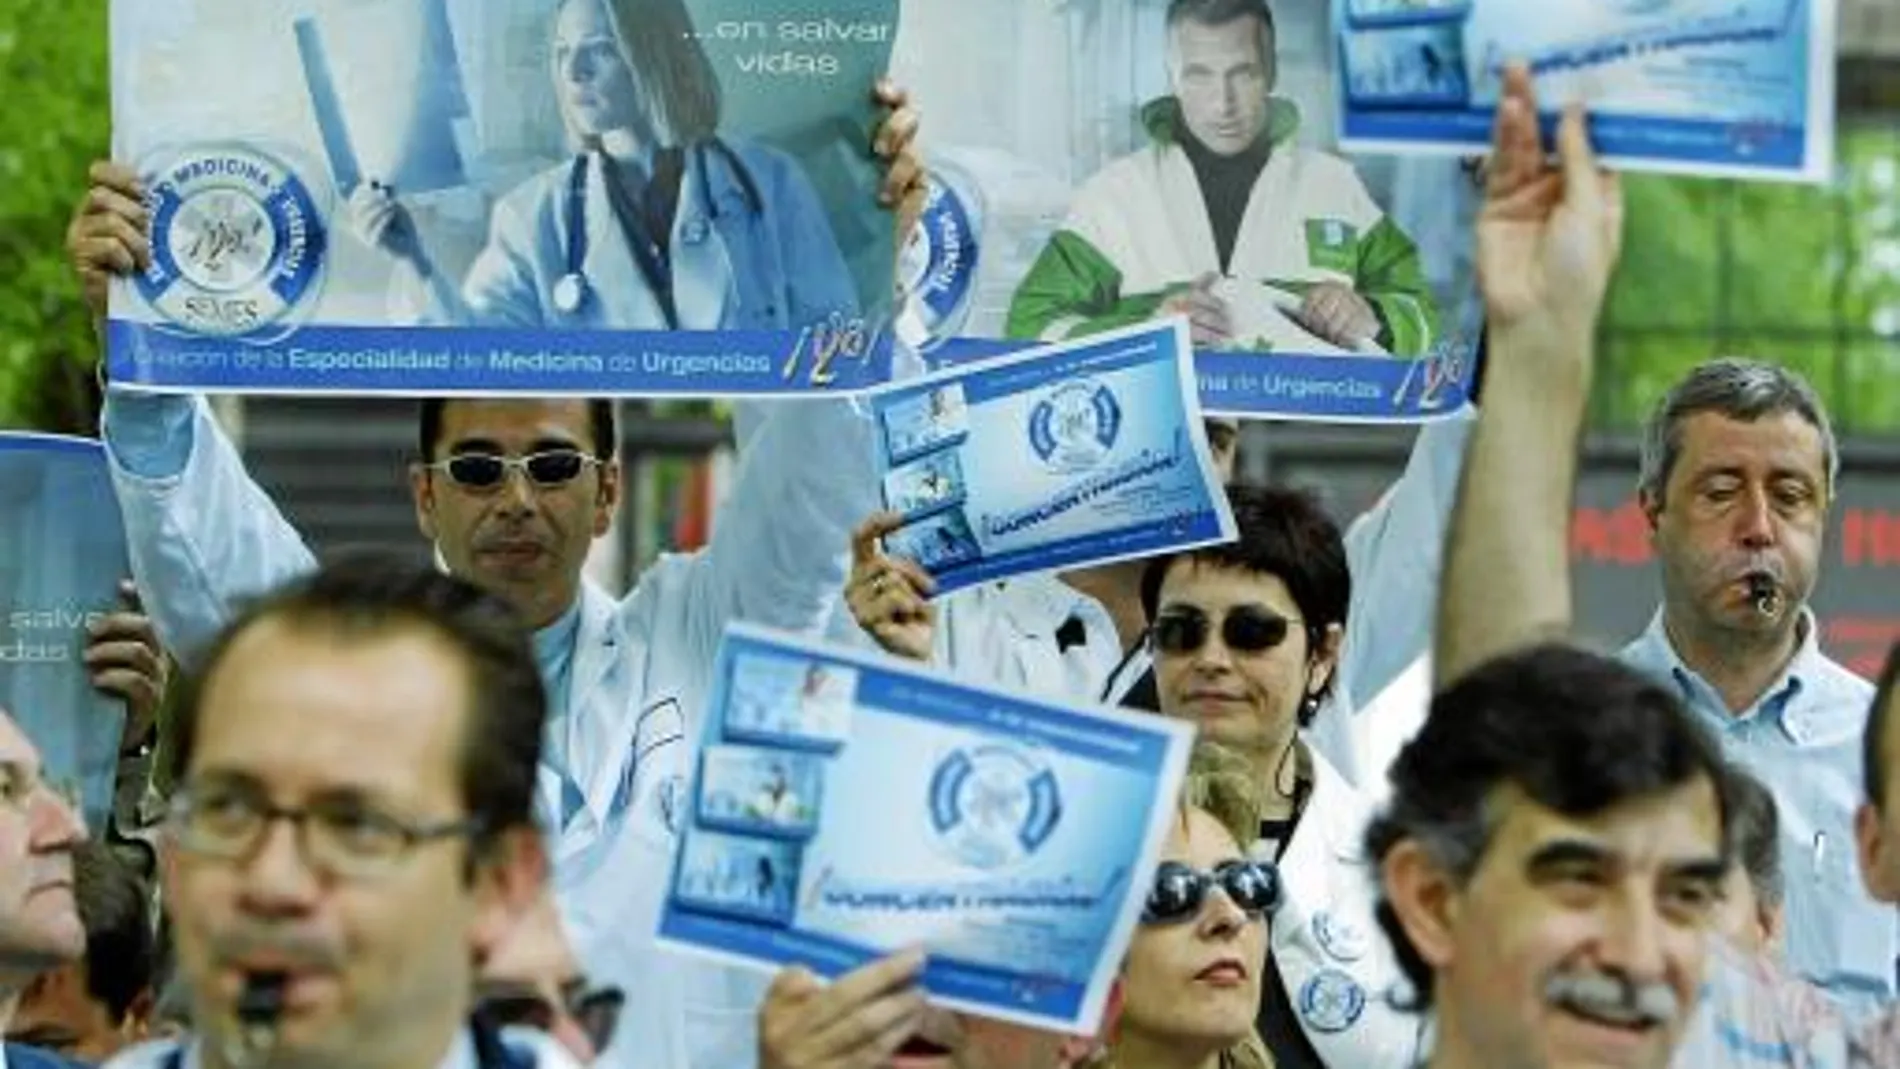 Los médicos de Urgencias ya se manifestaron frente al Ministerio de Sanidad en 2005 para reclamar una especialidad propia